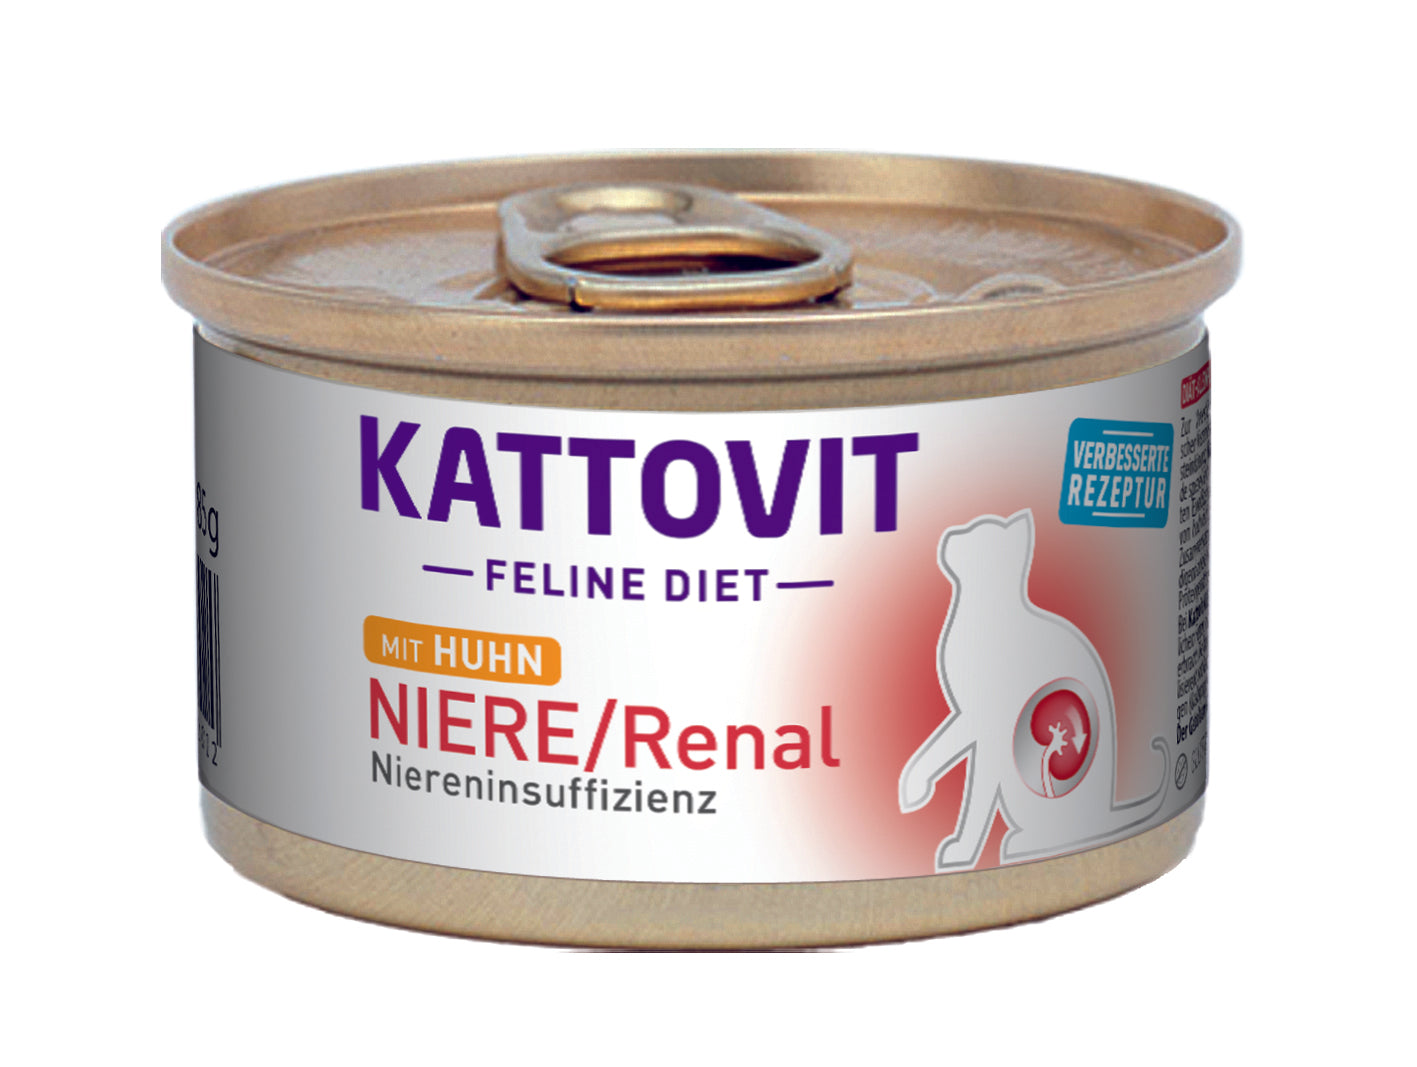 Artikel mit dem Namen Kattovit Feline Diet Niere/Renal - bei Niereninsuffizienz im Shop von zoo.de , dem Onlineshop für nachhaltiges Hundefutter und Katzenfutter.